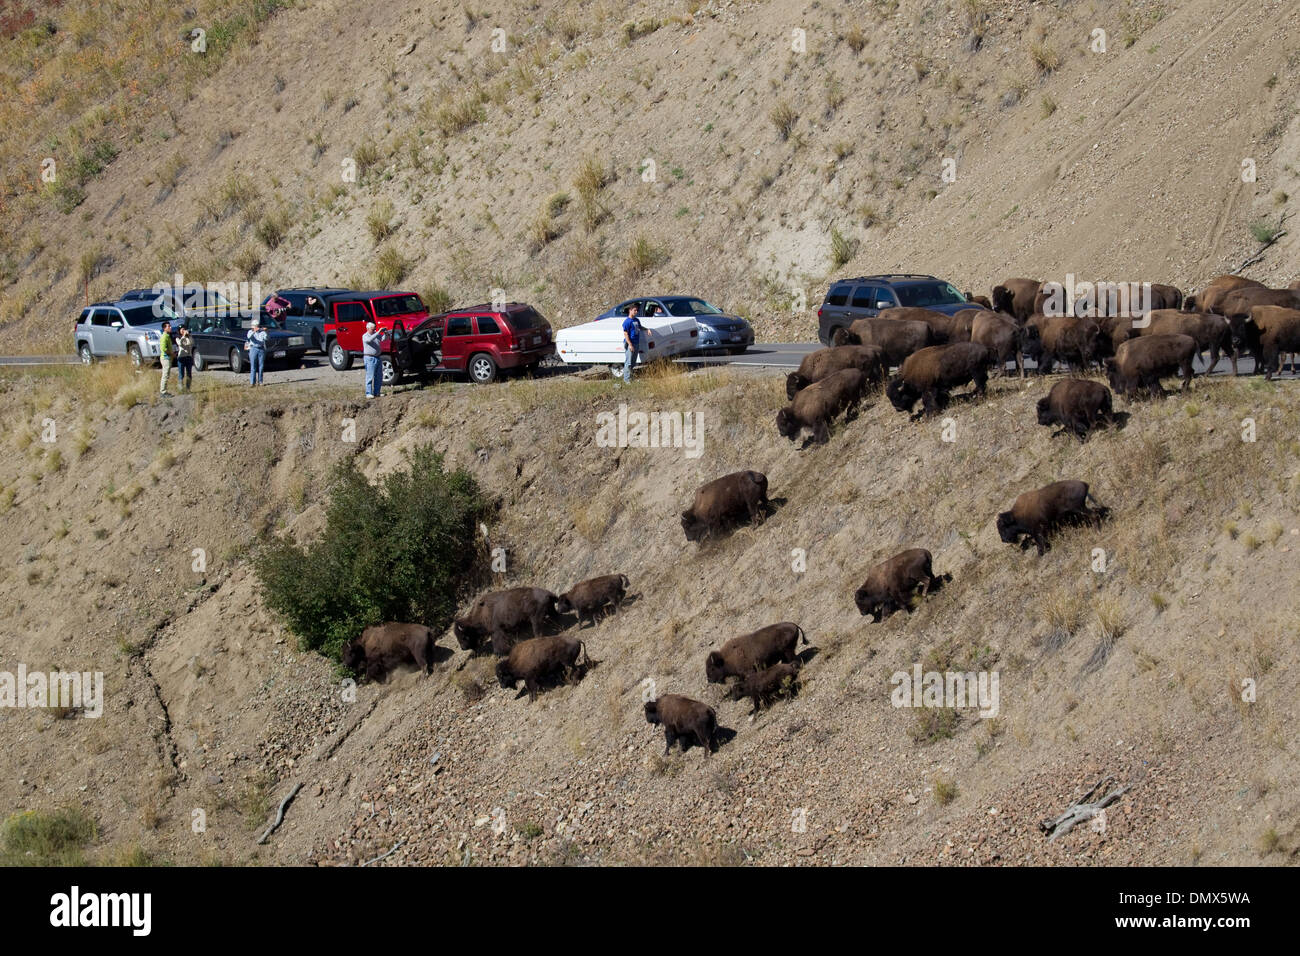 Bison - sur route causant des embouteillages Bison bison Parc National de Yellowstone au Wyoming. USA MA002760 Banque D'Images